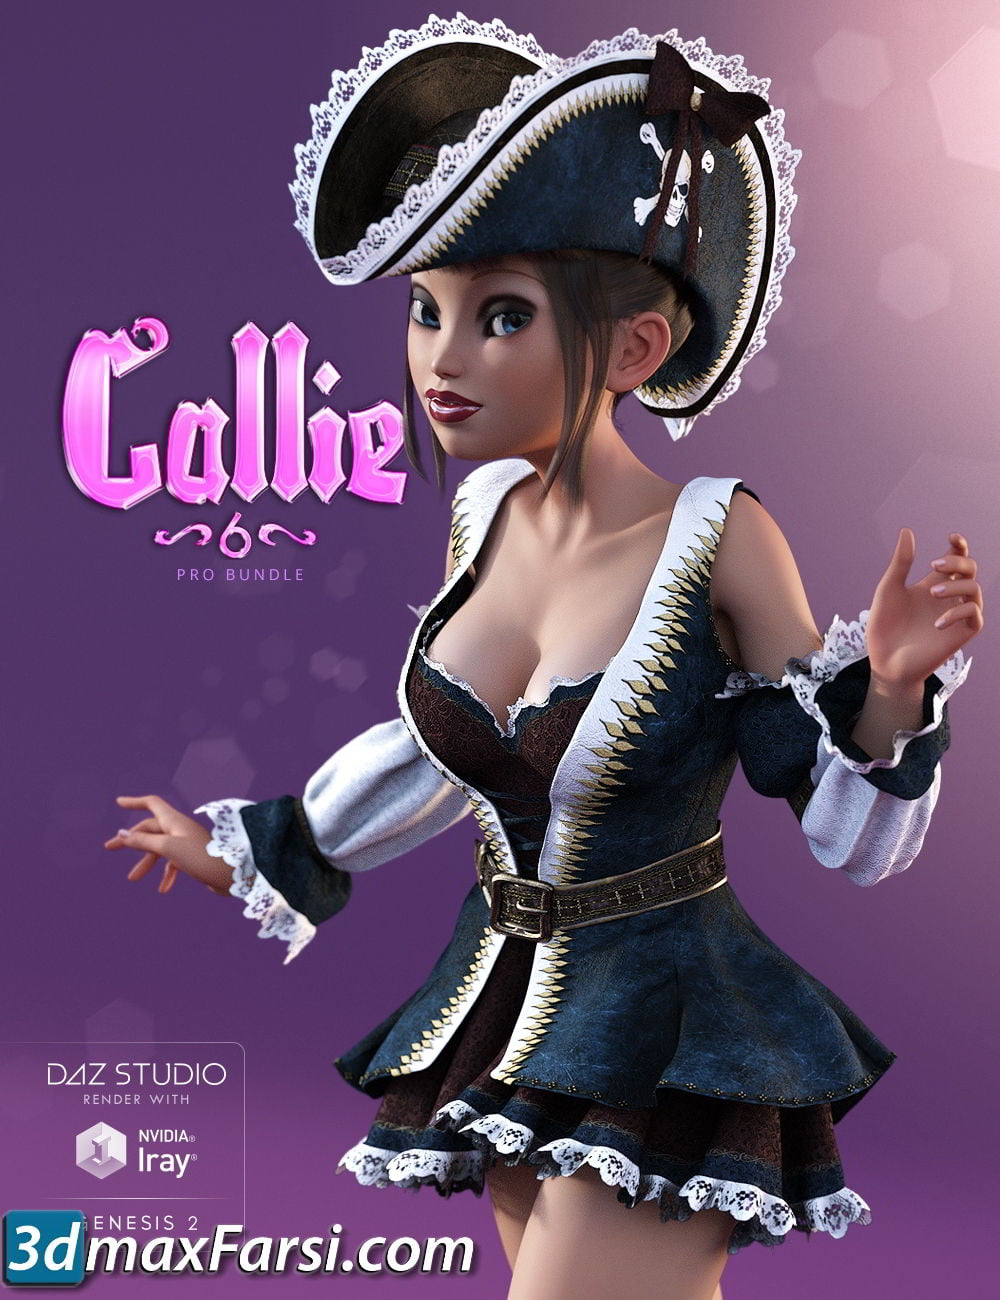 Daz3d, Callie 6 Pro Bundle free download